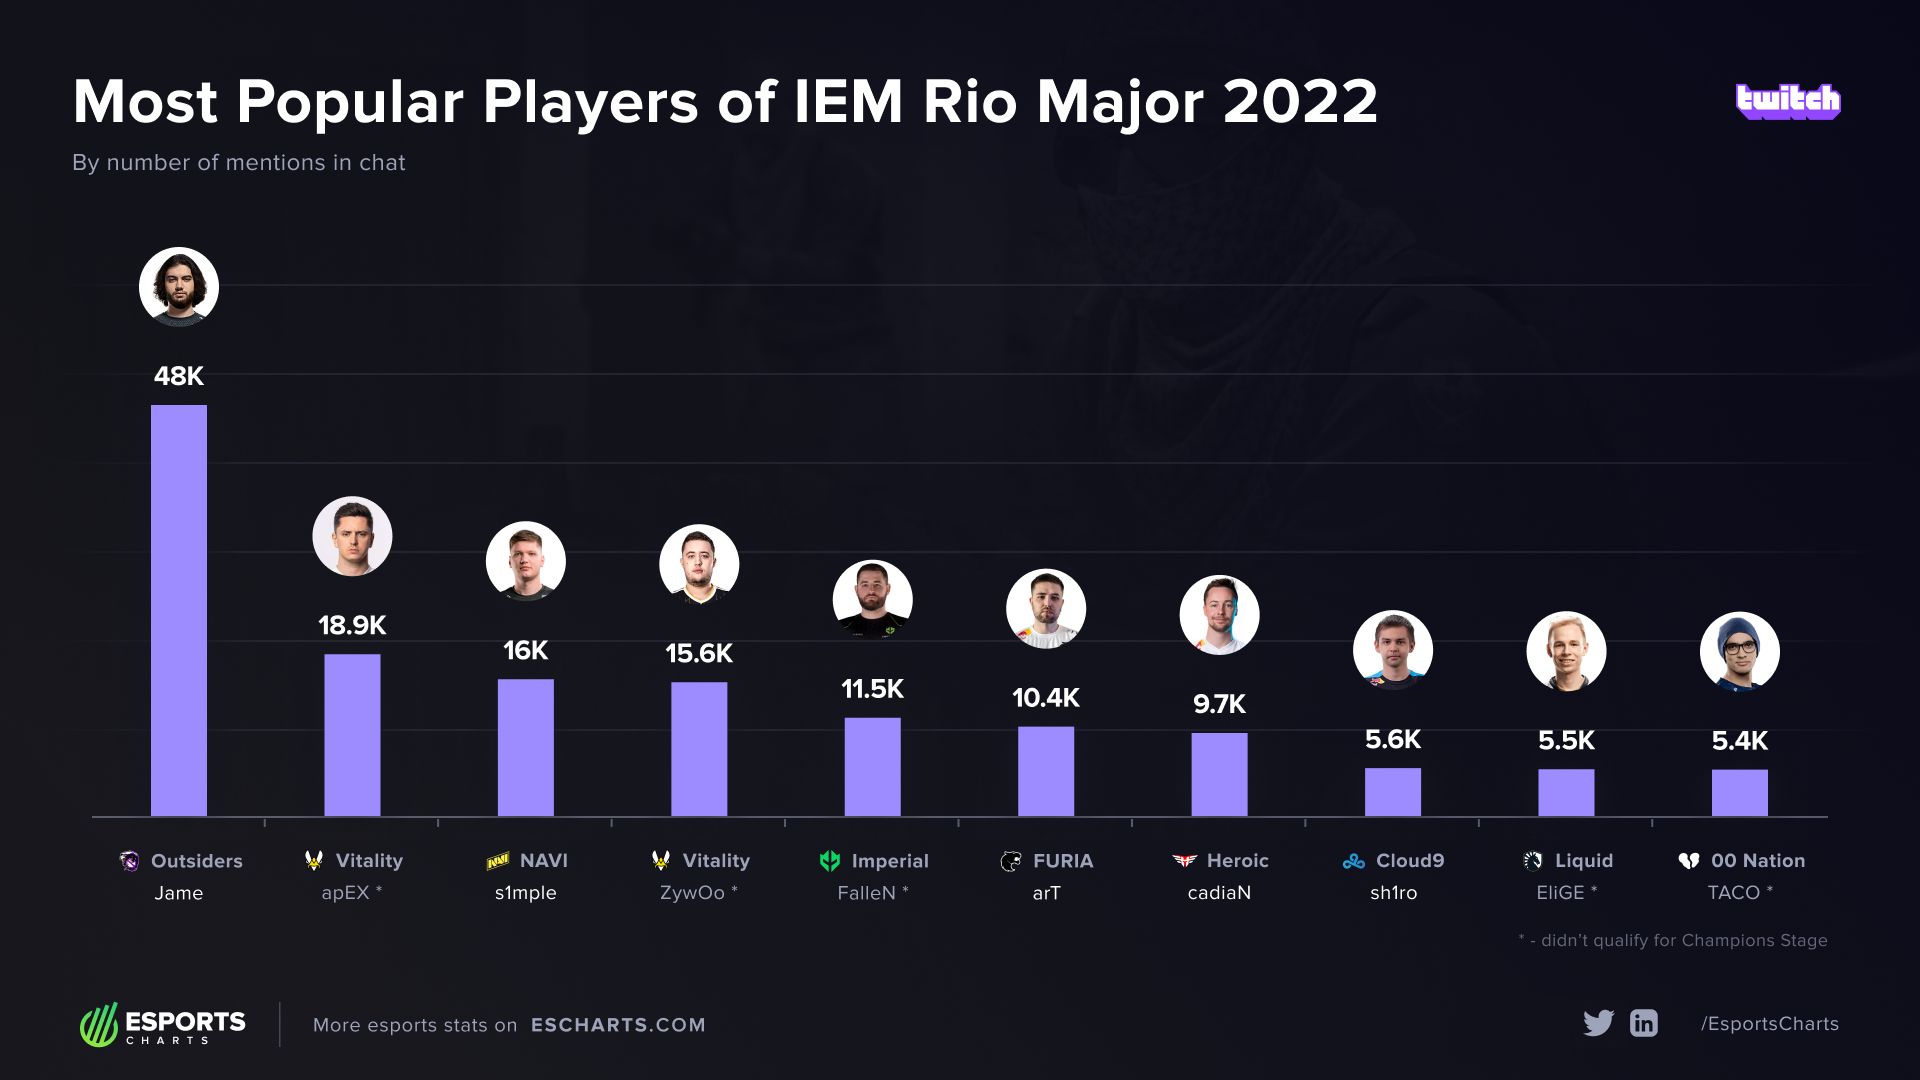 Рейтинг по упоминаниям игроков в чате трансляций IEM Rio Major 2022 на Twitch. Источник: Esports Charts